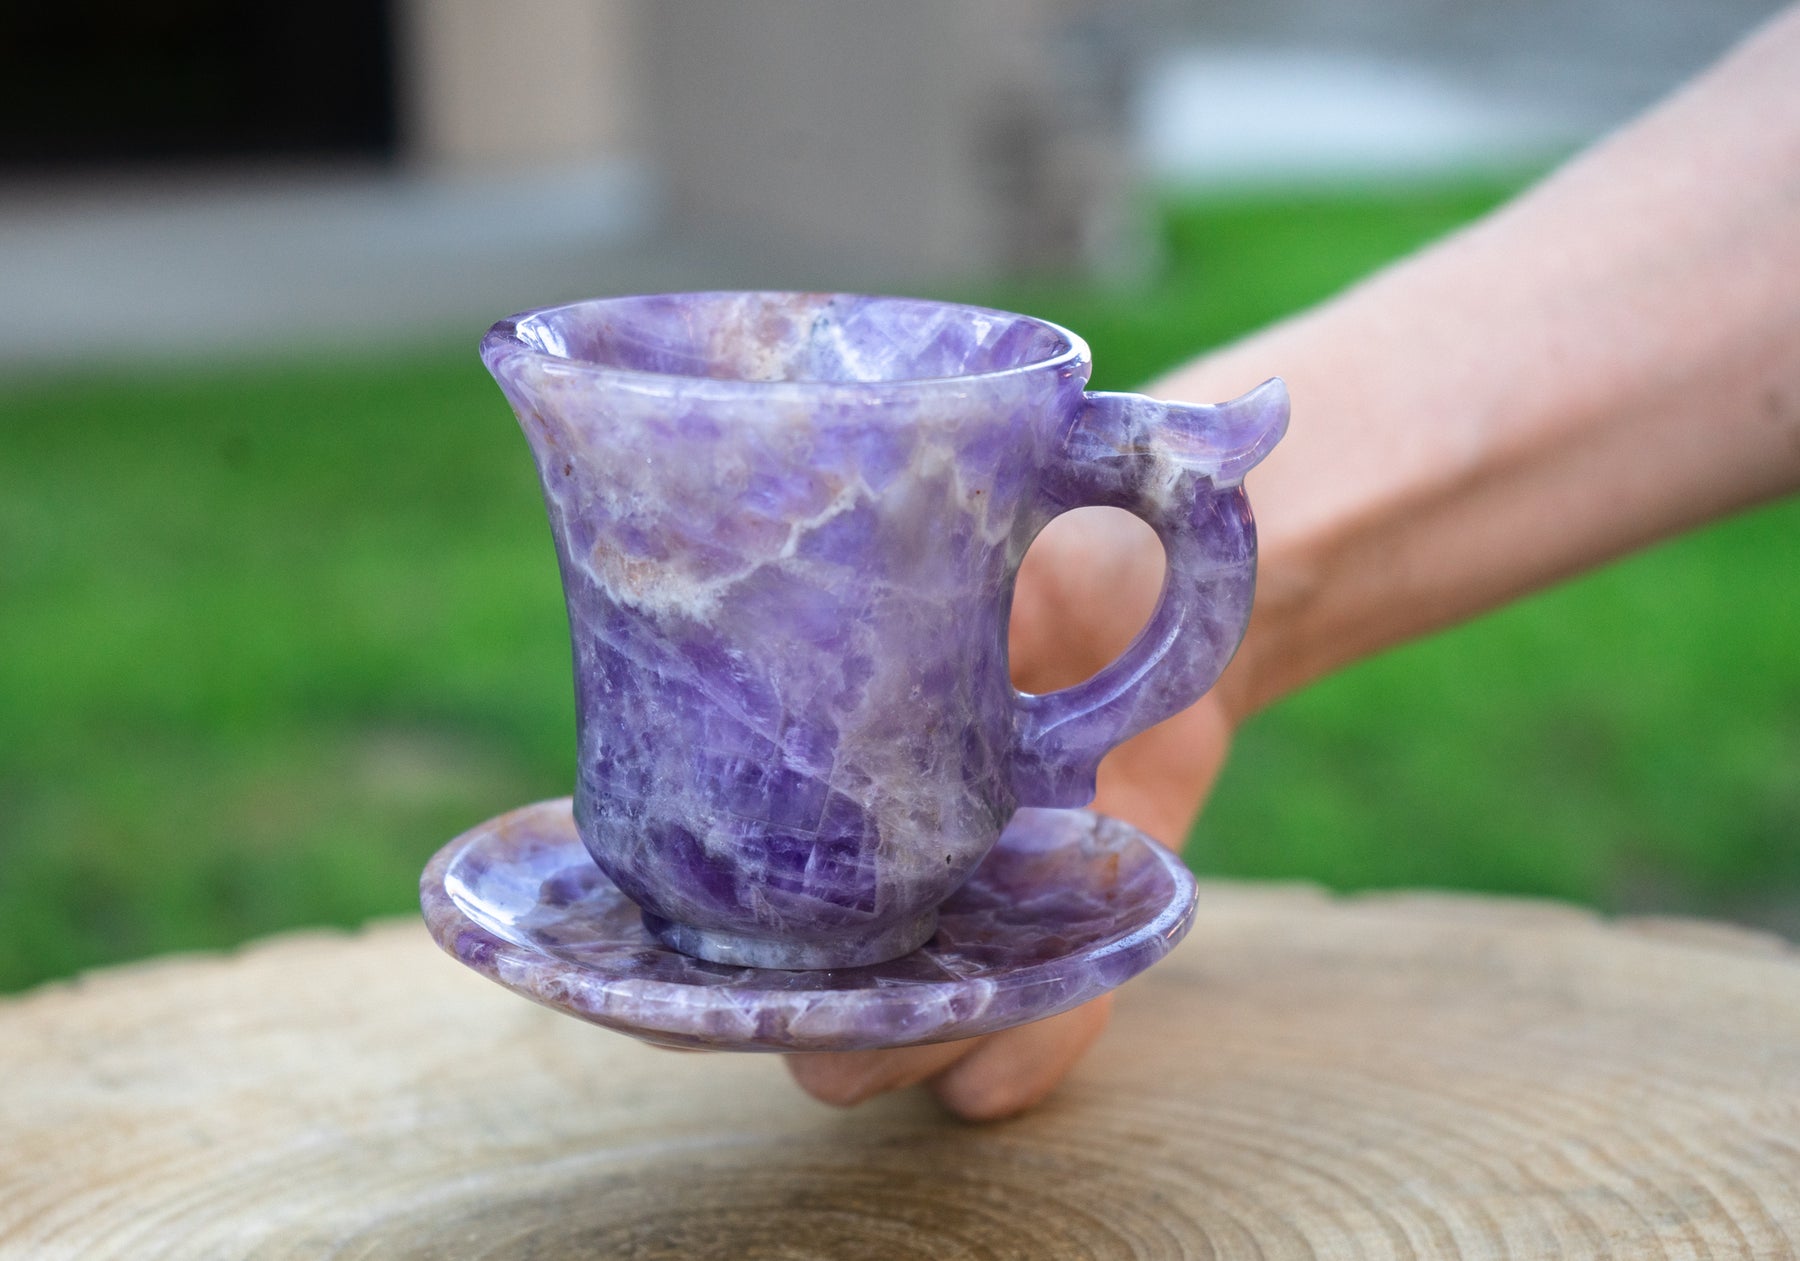 Purple Tea Cup 